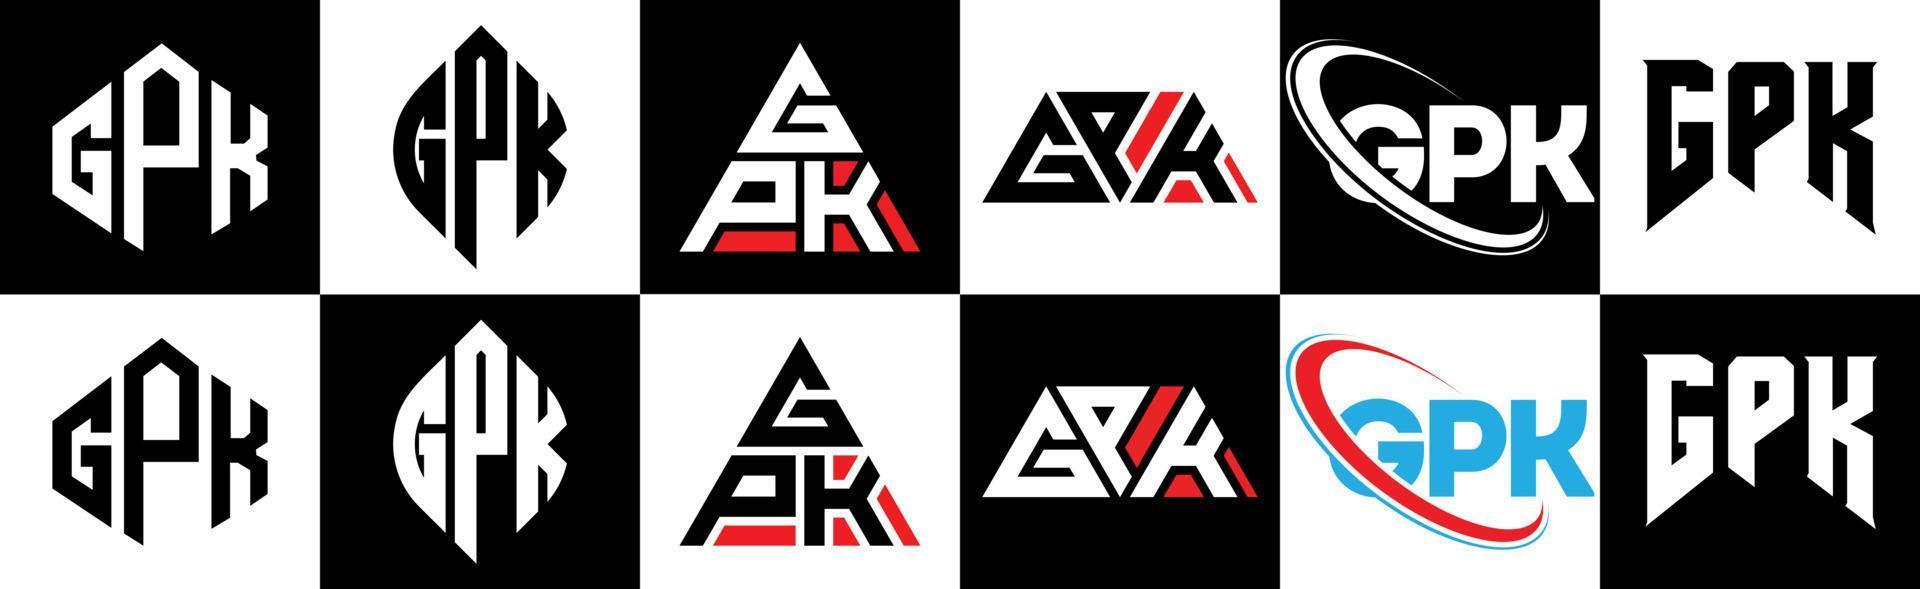 gpk-Buchstaben-Logo-Design in sechs Stilen. gpk polygon, kreis, dreieck, sechseck, flacher und einfacher stil mit schwarz-weißem buchstabenlogo in einer zeichenfläche. gpk minimalistisches und klassisches logo vektor